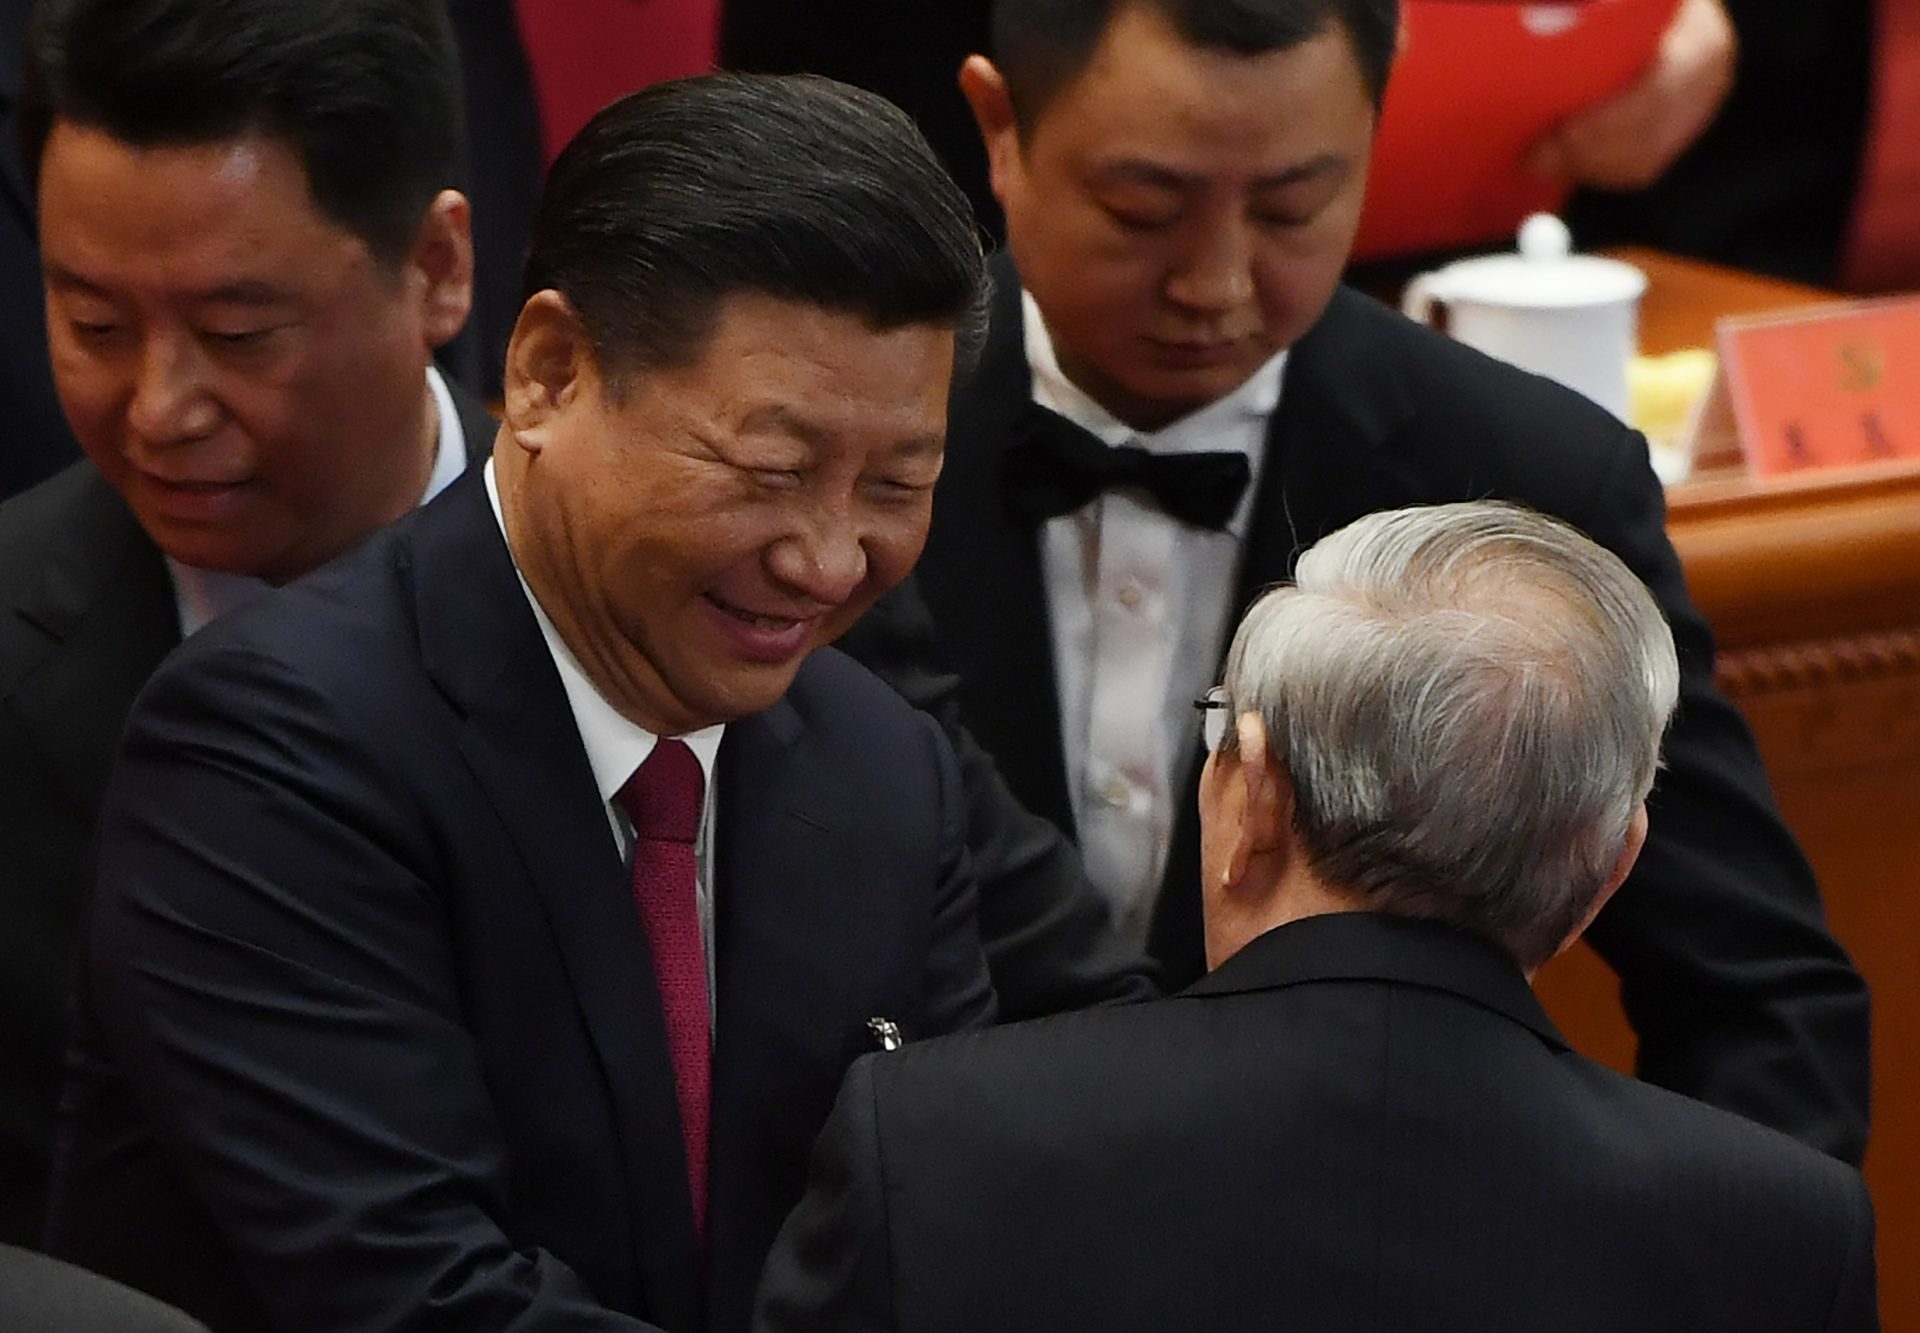 Le président chinois Xi Jinping salue l'ancien Premier ministre Zhu Rongji lors de la clôture du 19ème Congrès du Parti communiste chinois dans le Grand Hall du Peuple à Pékin, le 24 octobre 2017. Le secrétaire général du Parti a obtenu sans surprise un nouveau mandat de 5 ans et l'inscription de sa "pensée" avec son nom dans la Charte du Parti, faisant de lui l'égal de Mao et deng au panthéon communiste chinois. (Crédits : AFP PHOTO / GREG BAKER)